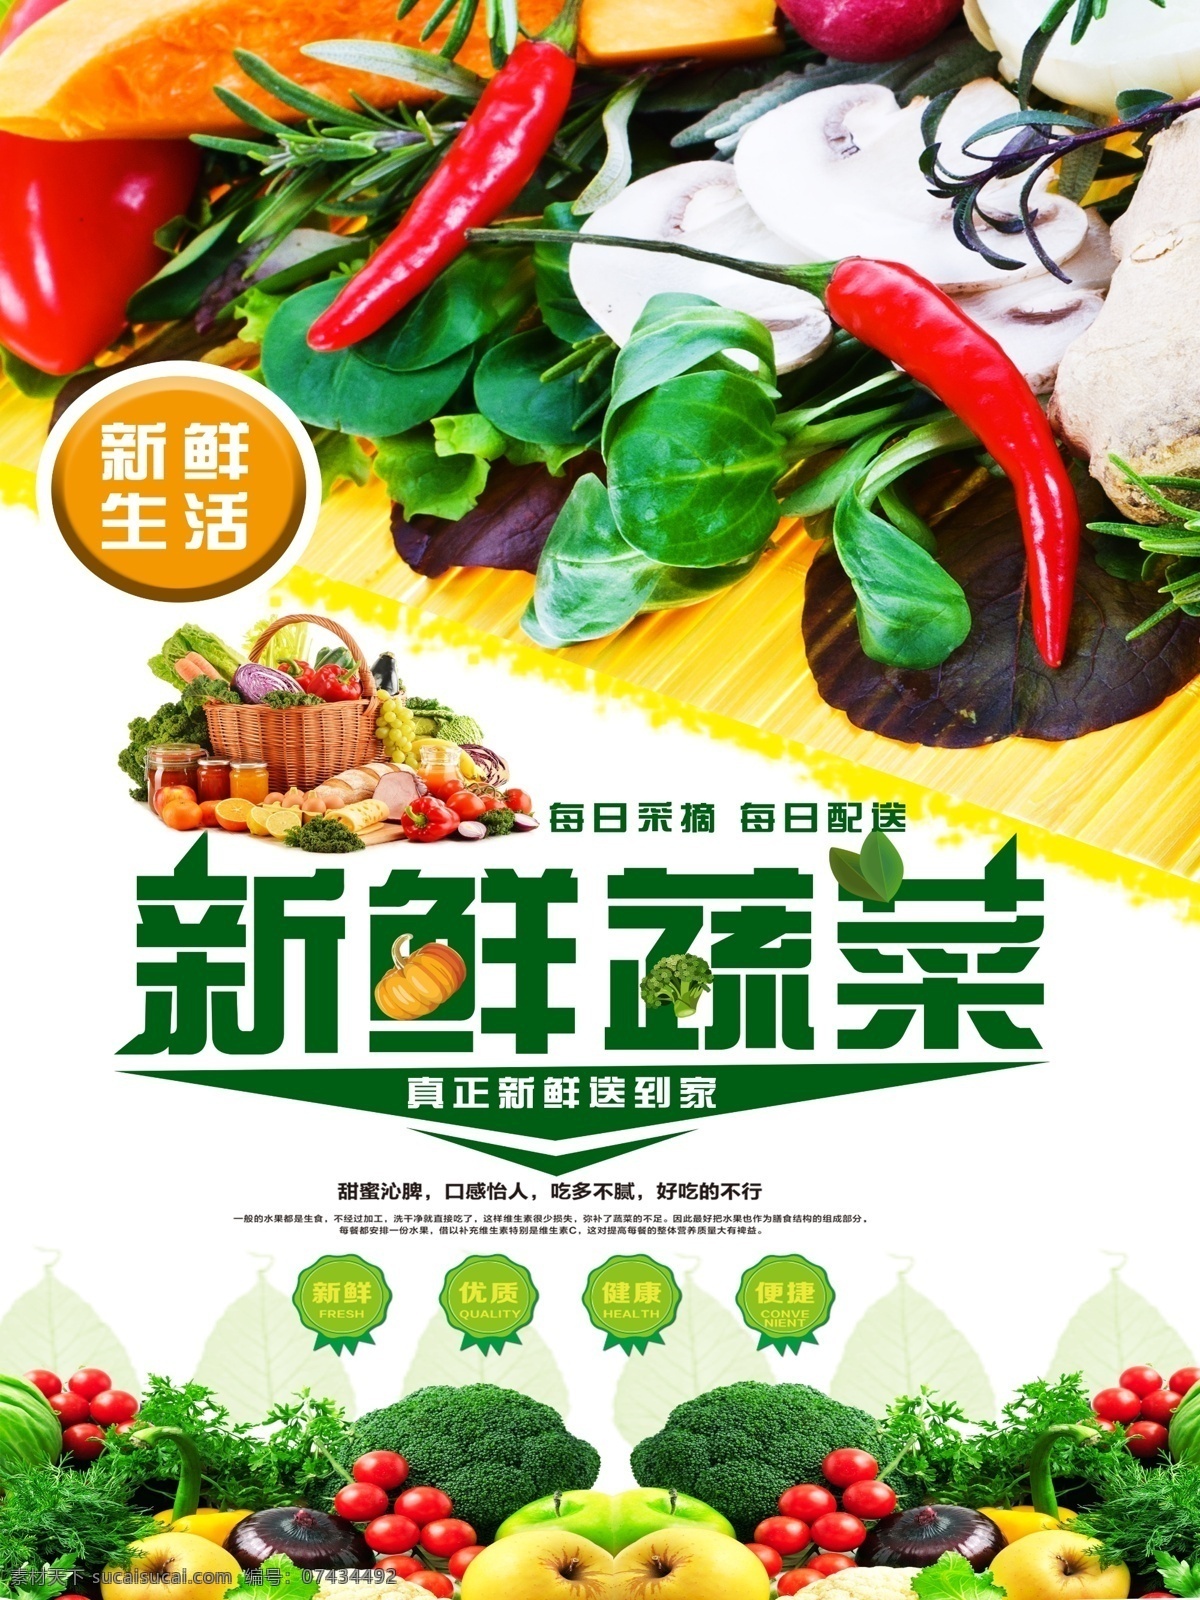 创意 蔬菜 促销 海报 清新 创意海报 绿色 促销海报 西兰花 健康 蔬菜海报 花椰菜海报 新鲜蔬菜海报 有机蔬菜 夏日蔬菜 宣传海报 极简 感兴趣